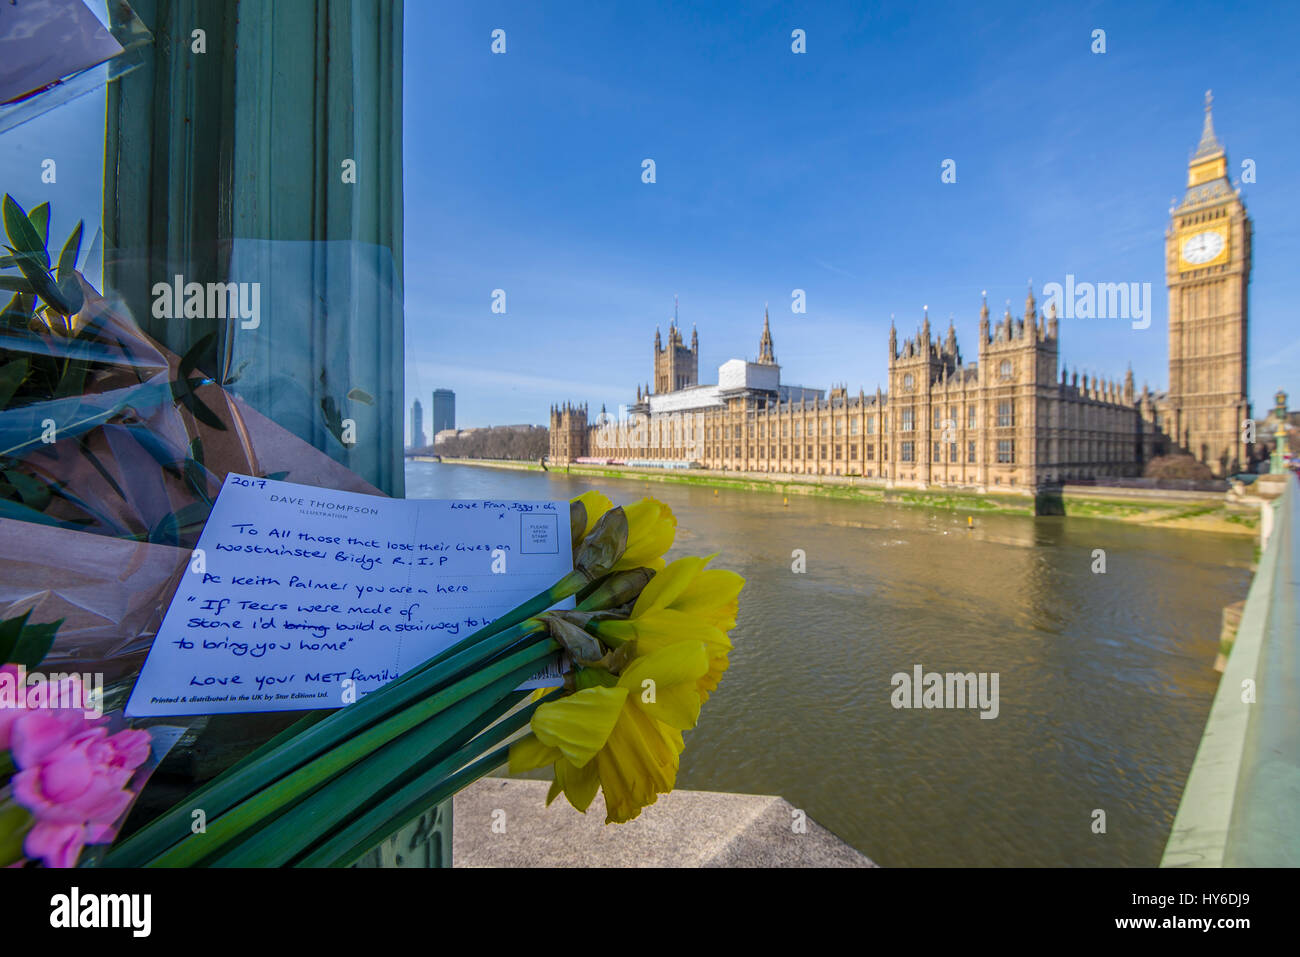 Tributs floraux sur le pont de Westminster, Londres, honorant les vies perdues d'actions terroristes le 22 mars 2017 ici et sur des Maisons du Parlement Banque D'Images